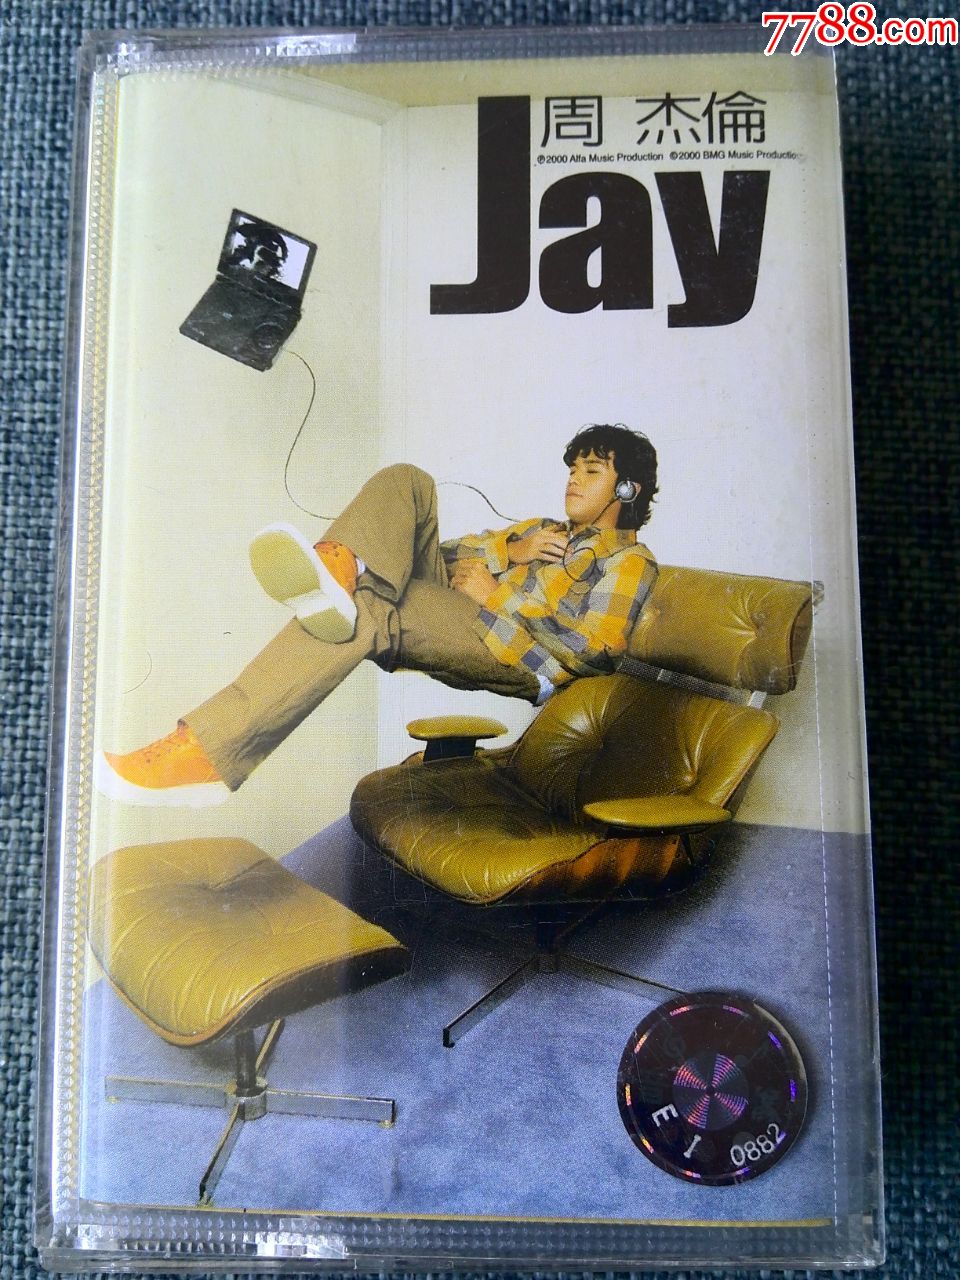 周杰伦首张专辑《jay》bmg版权,上海音像公司发行(灰白色磁带)